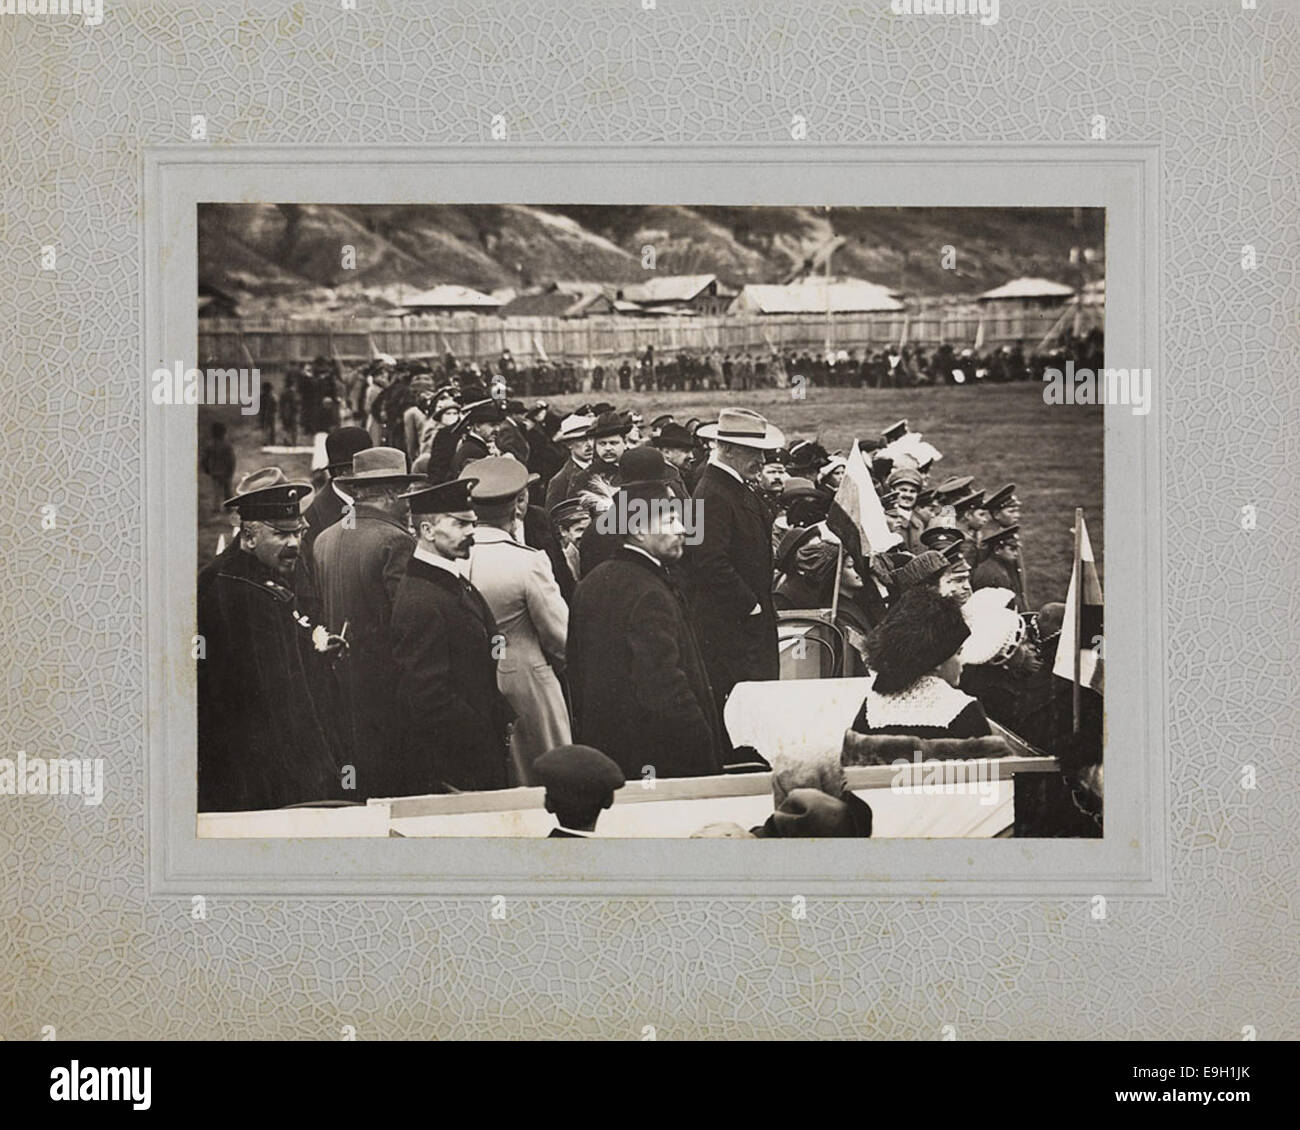 Fridtjof Nansen på tribunen som æresgjest under en fotballkamp Stock Photo